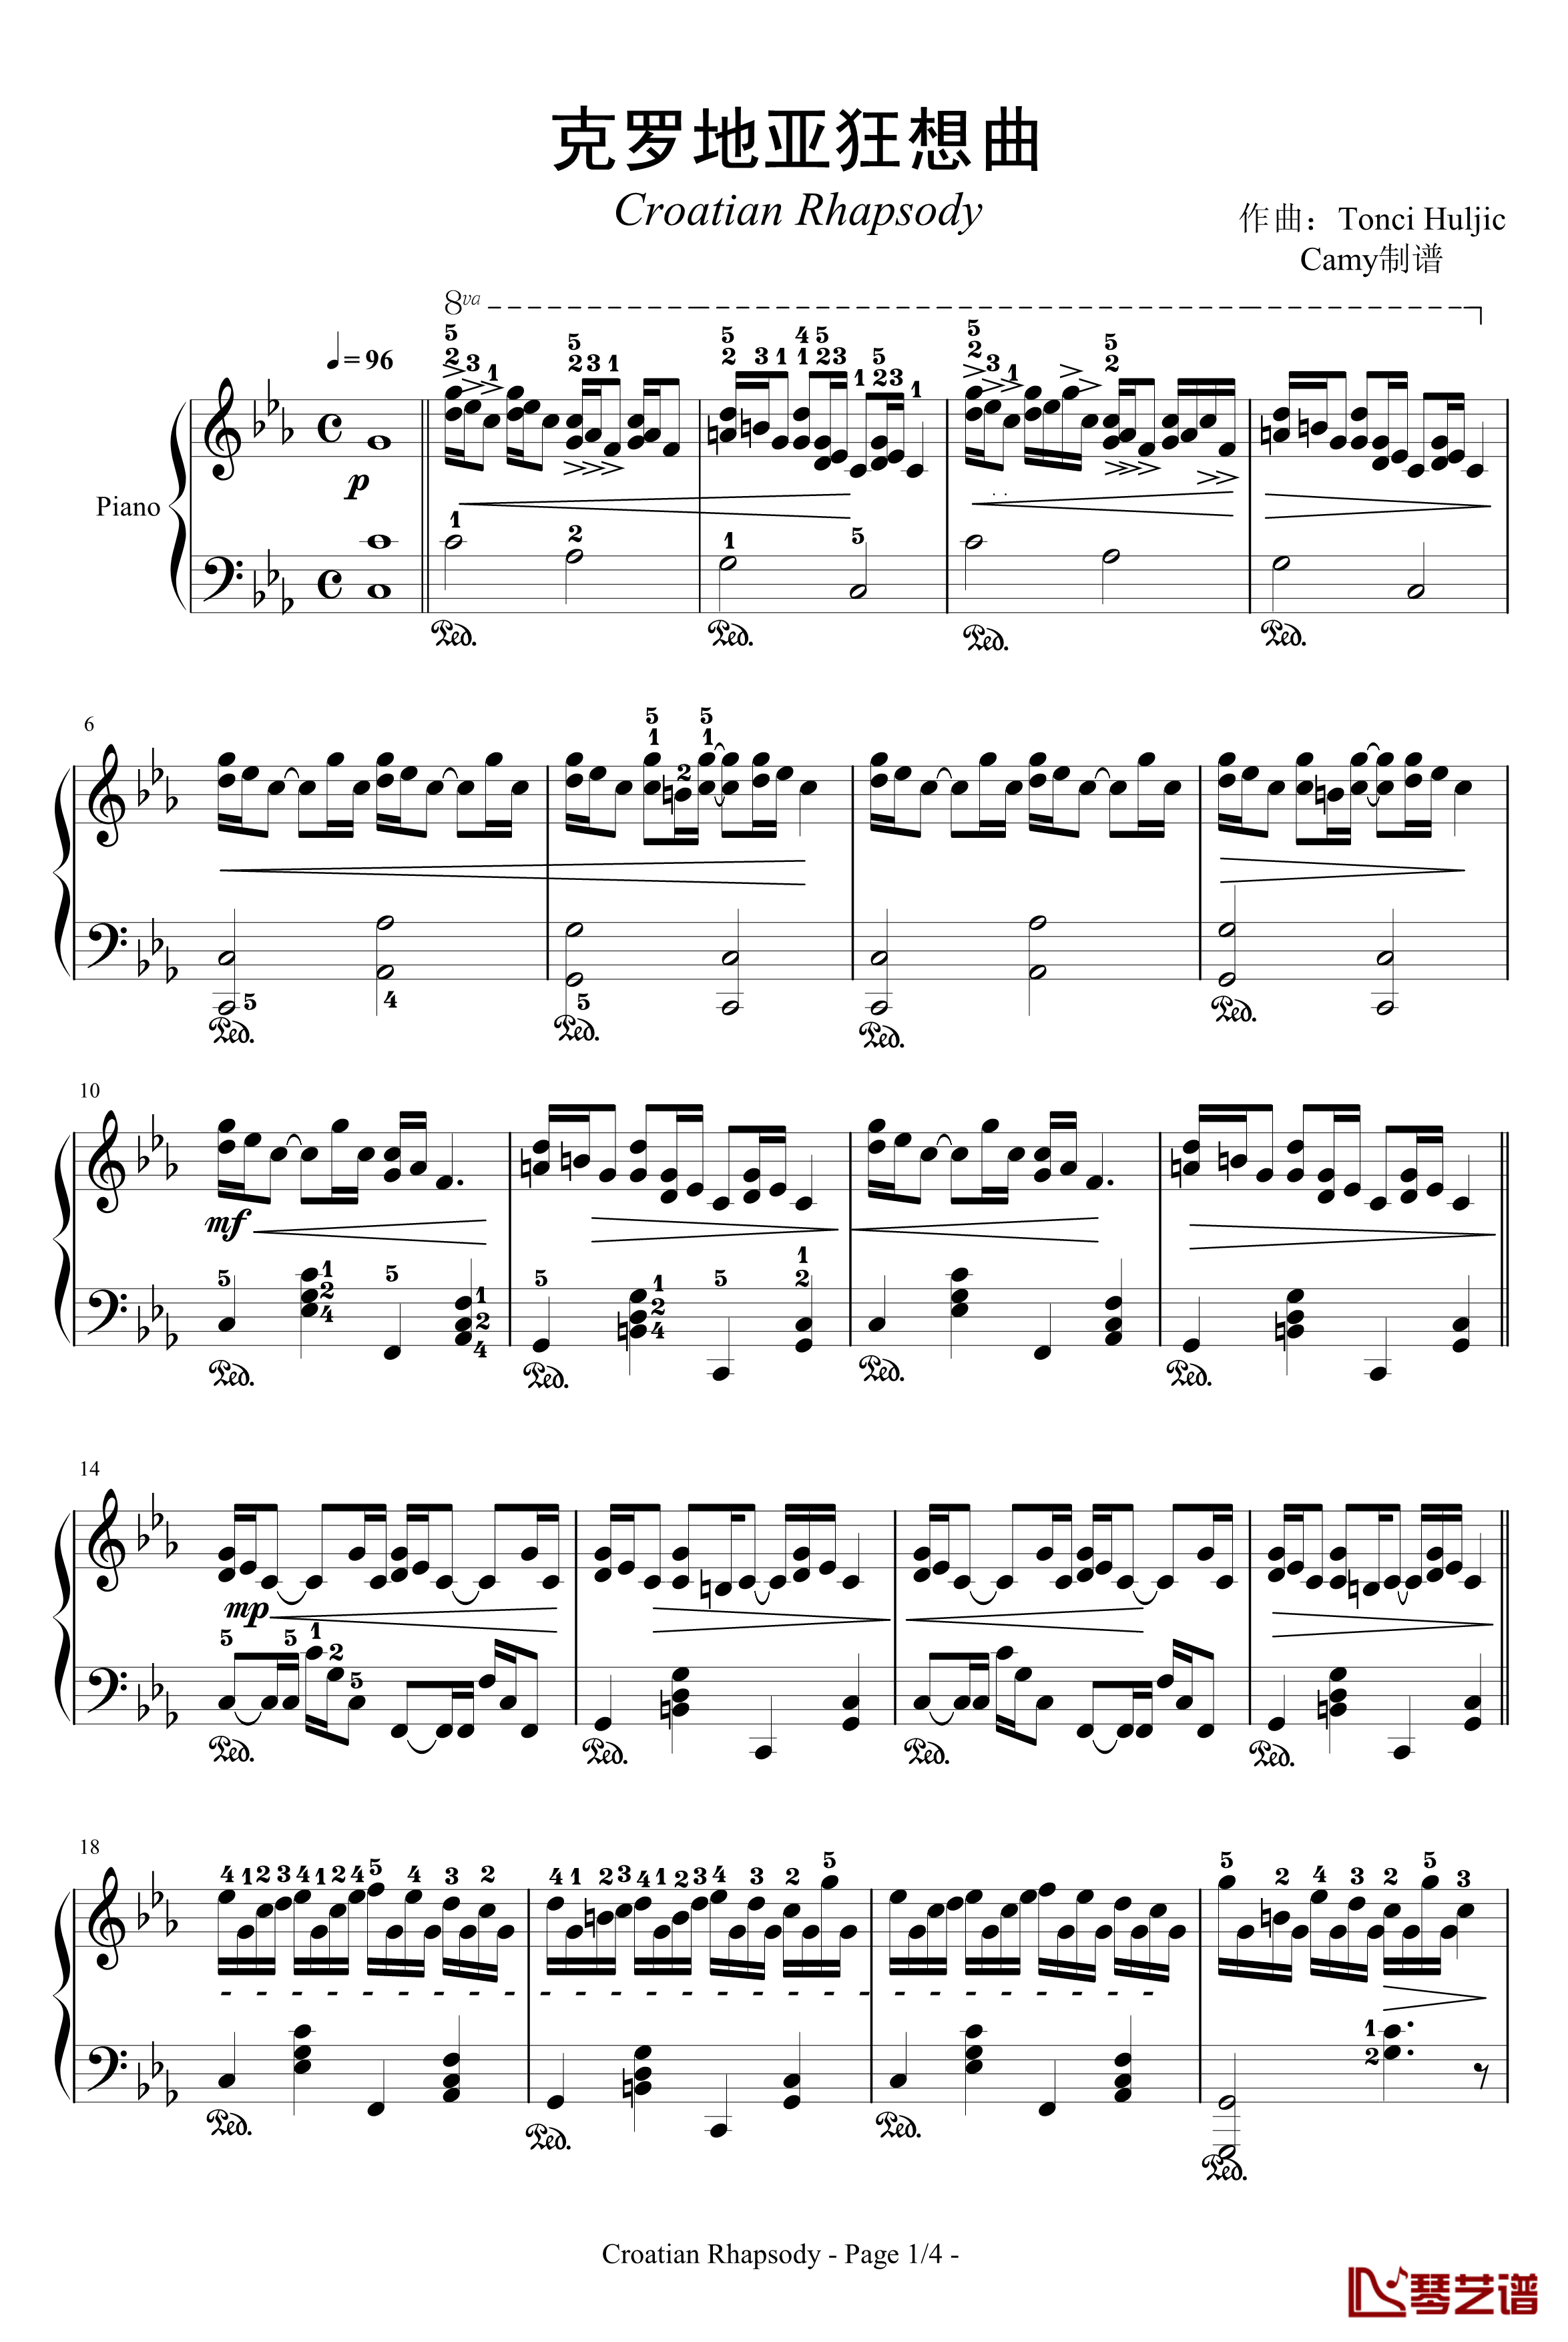 克罗地亚狂想曲钢琴谱-带指法-马克西姆-Maksim·Mrvica